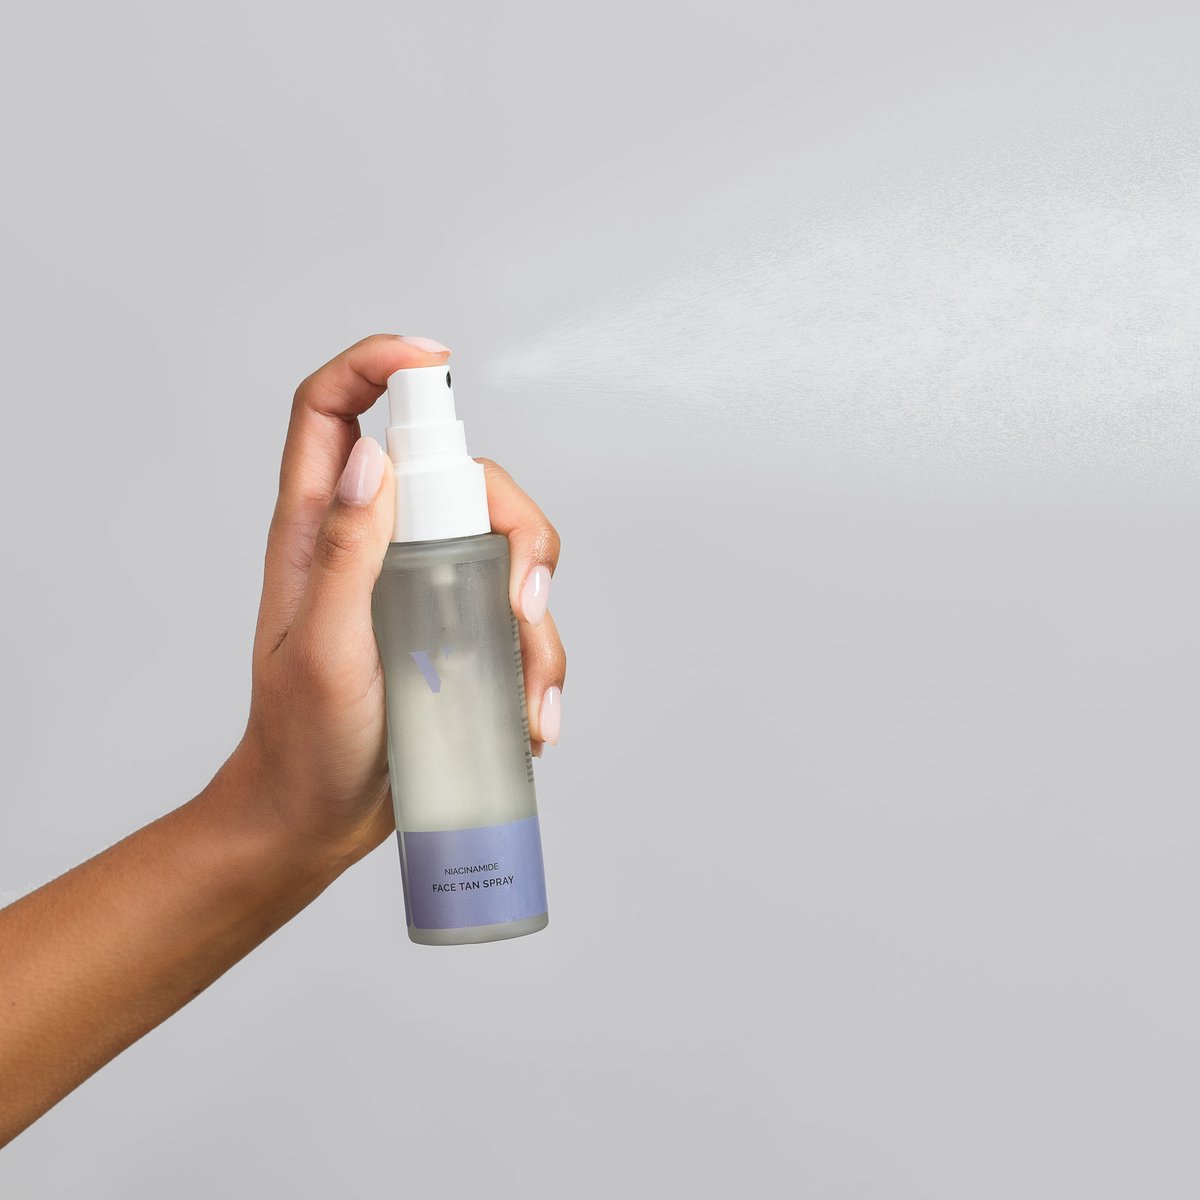 Venice Body - Face tan spray - Zelfbruinerspray met niacinamide - zelfbruiner in spray voor het gezicht - tanning spray - self tan spray - huidverbeterend